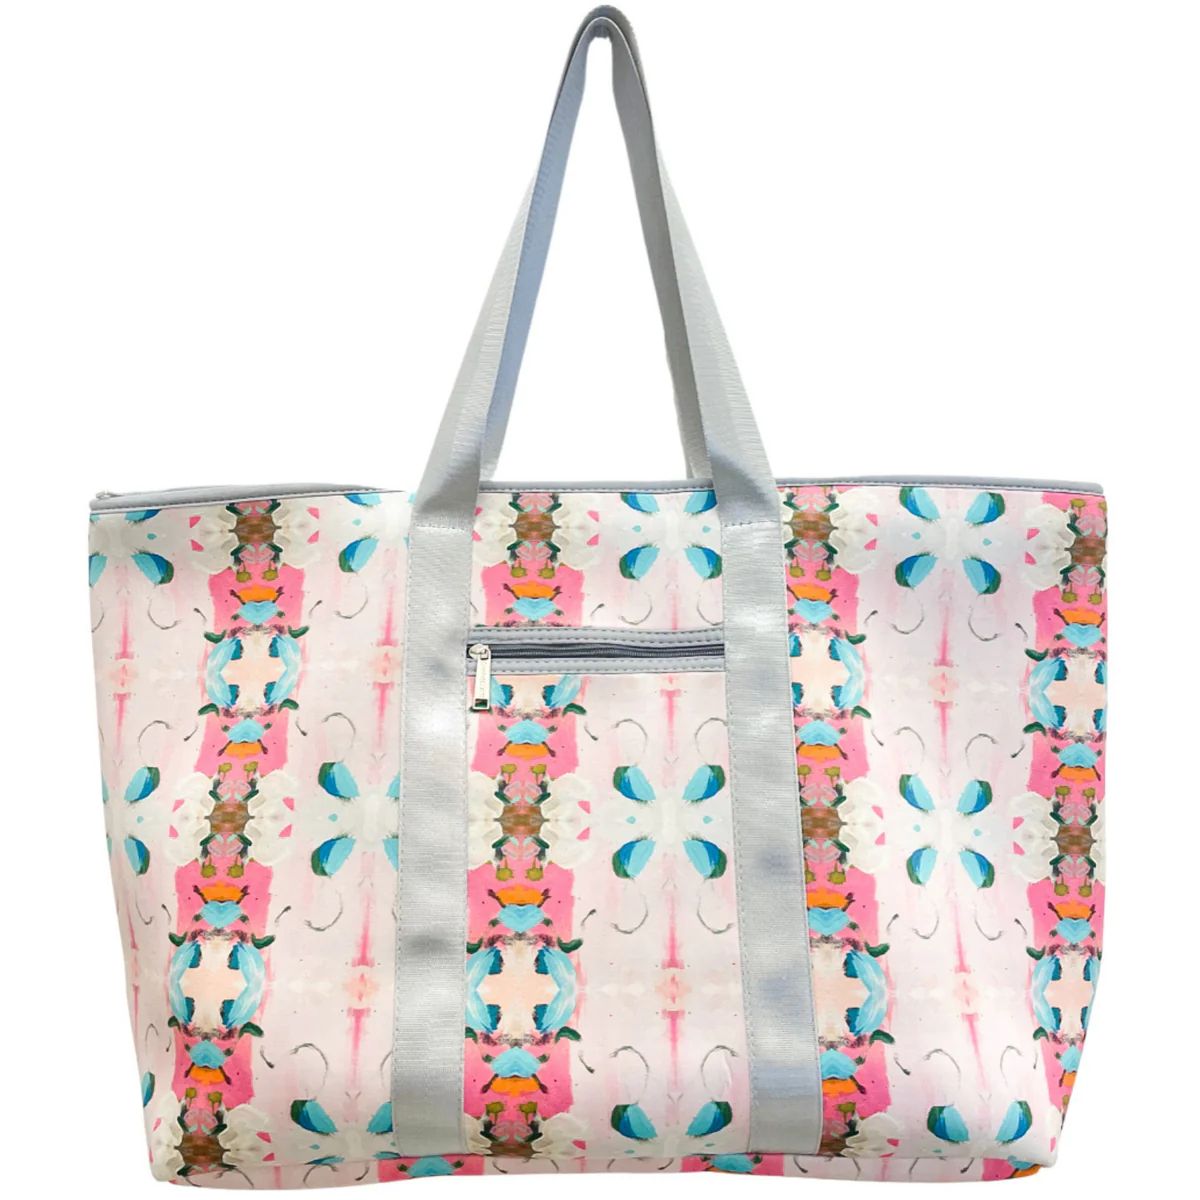 Monet's Garden Pink Neoprene Weekender Bag | Laura Park Designs